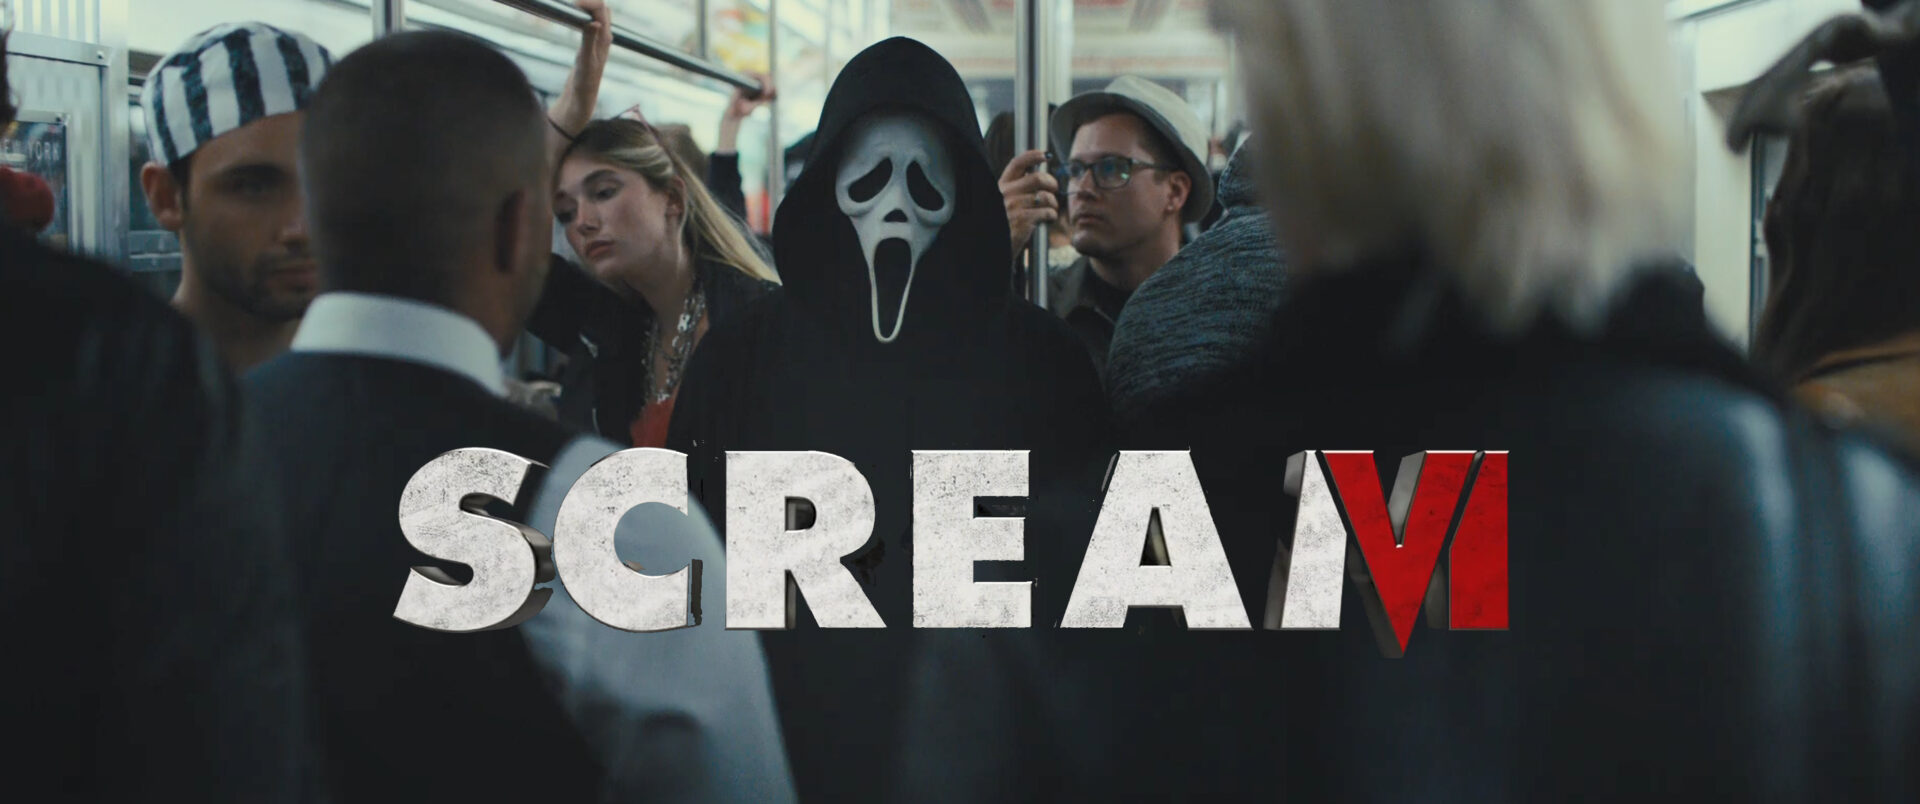 scream-6-teaser-trailer-1-banner